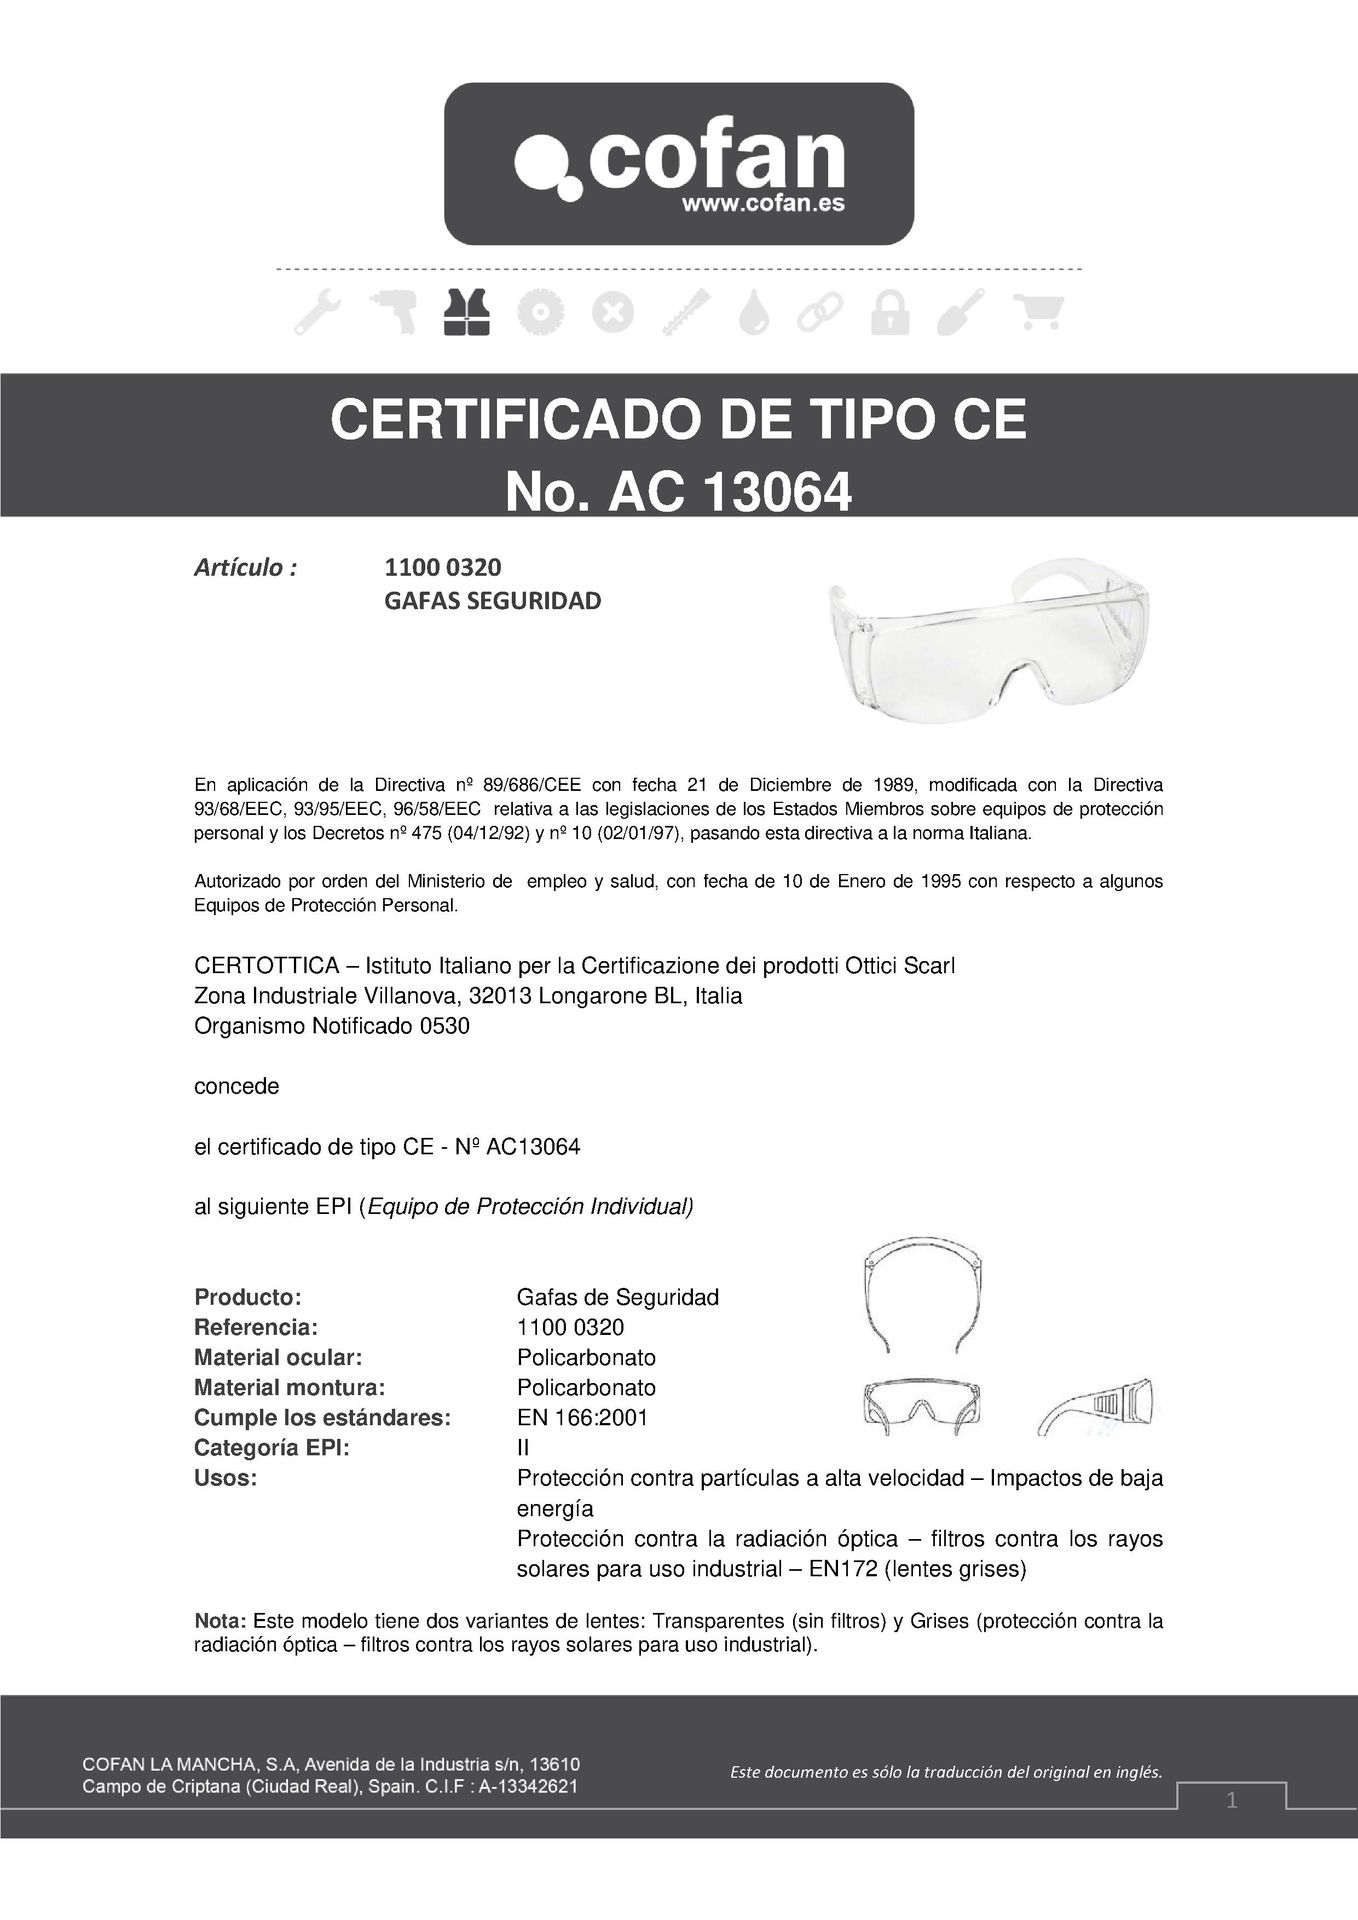 Certificado de Gafas de Seguridad Typical Ref. 11000320